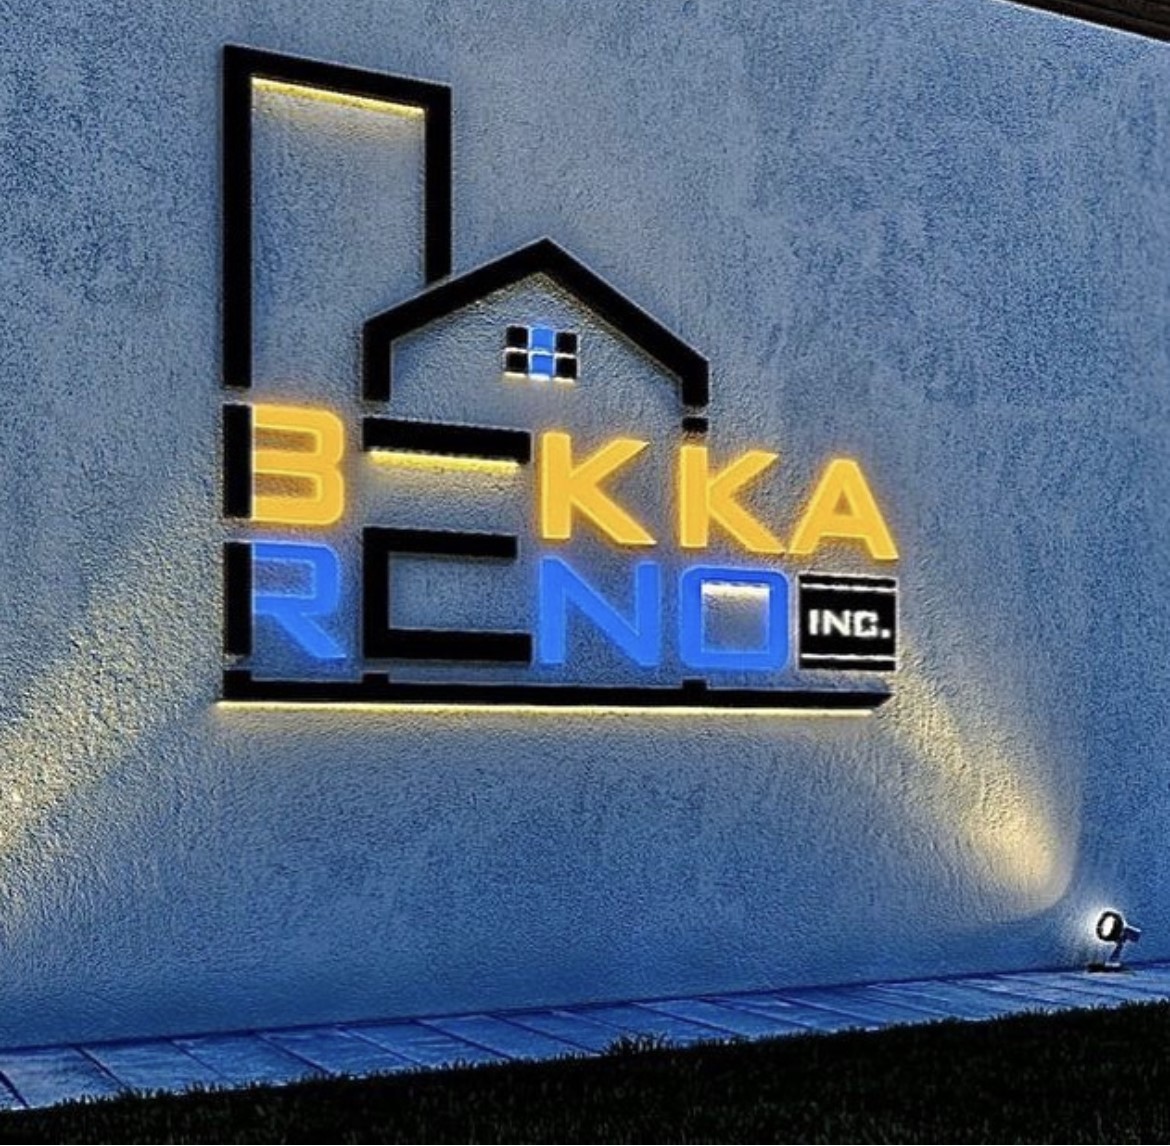 Bekkareno-about-us